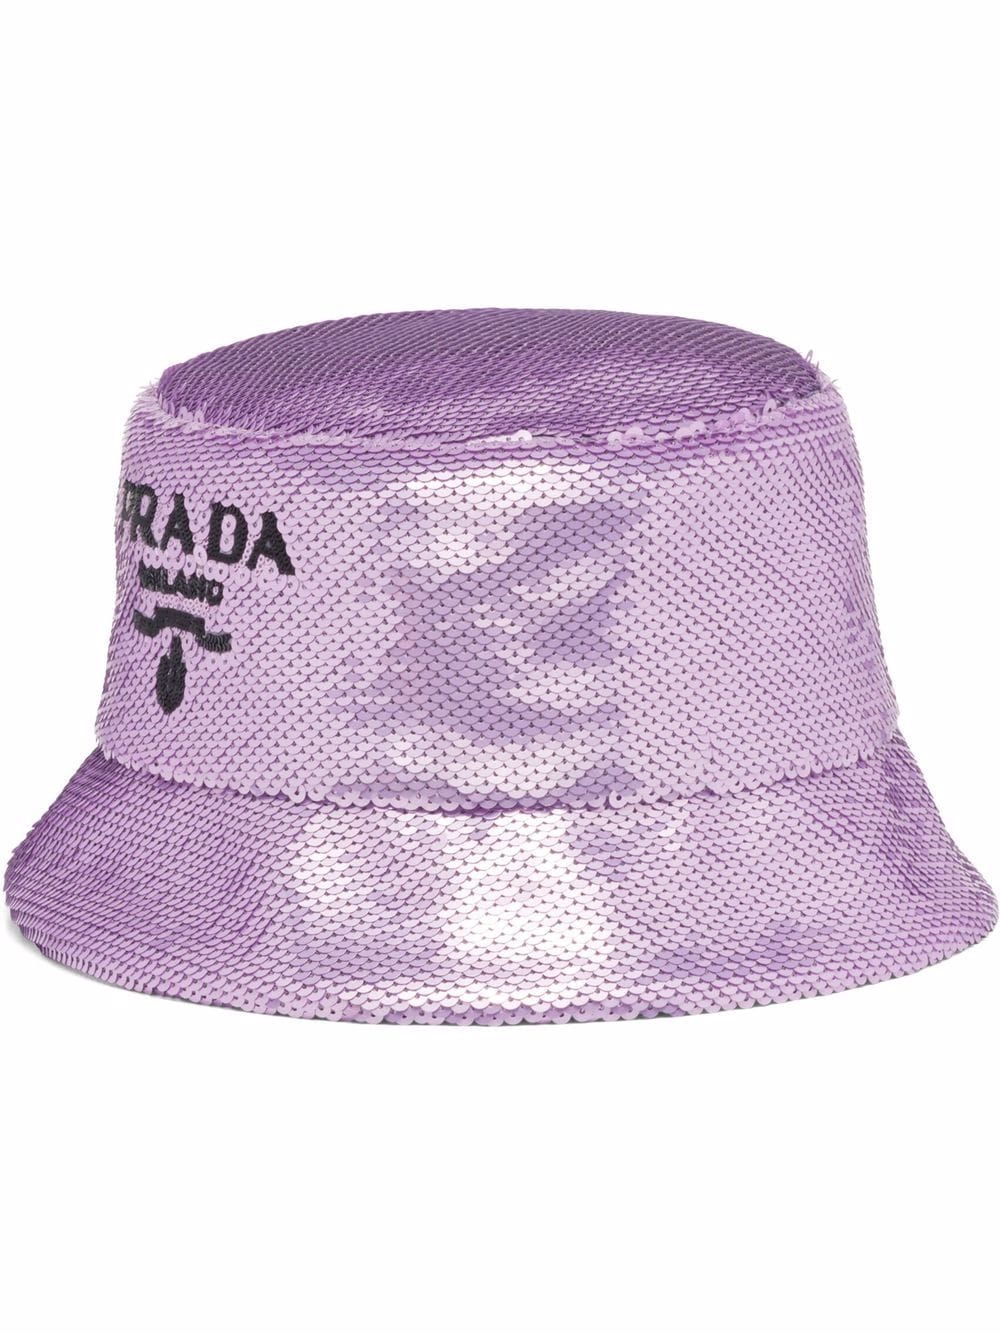 PRADA/プラダ スパンコール ロゴ バケット ハットファブリック